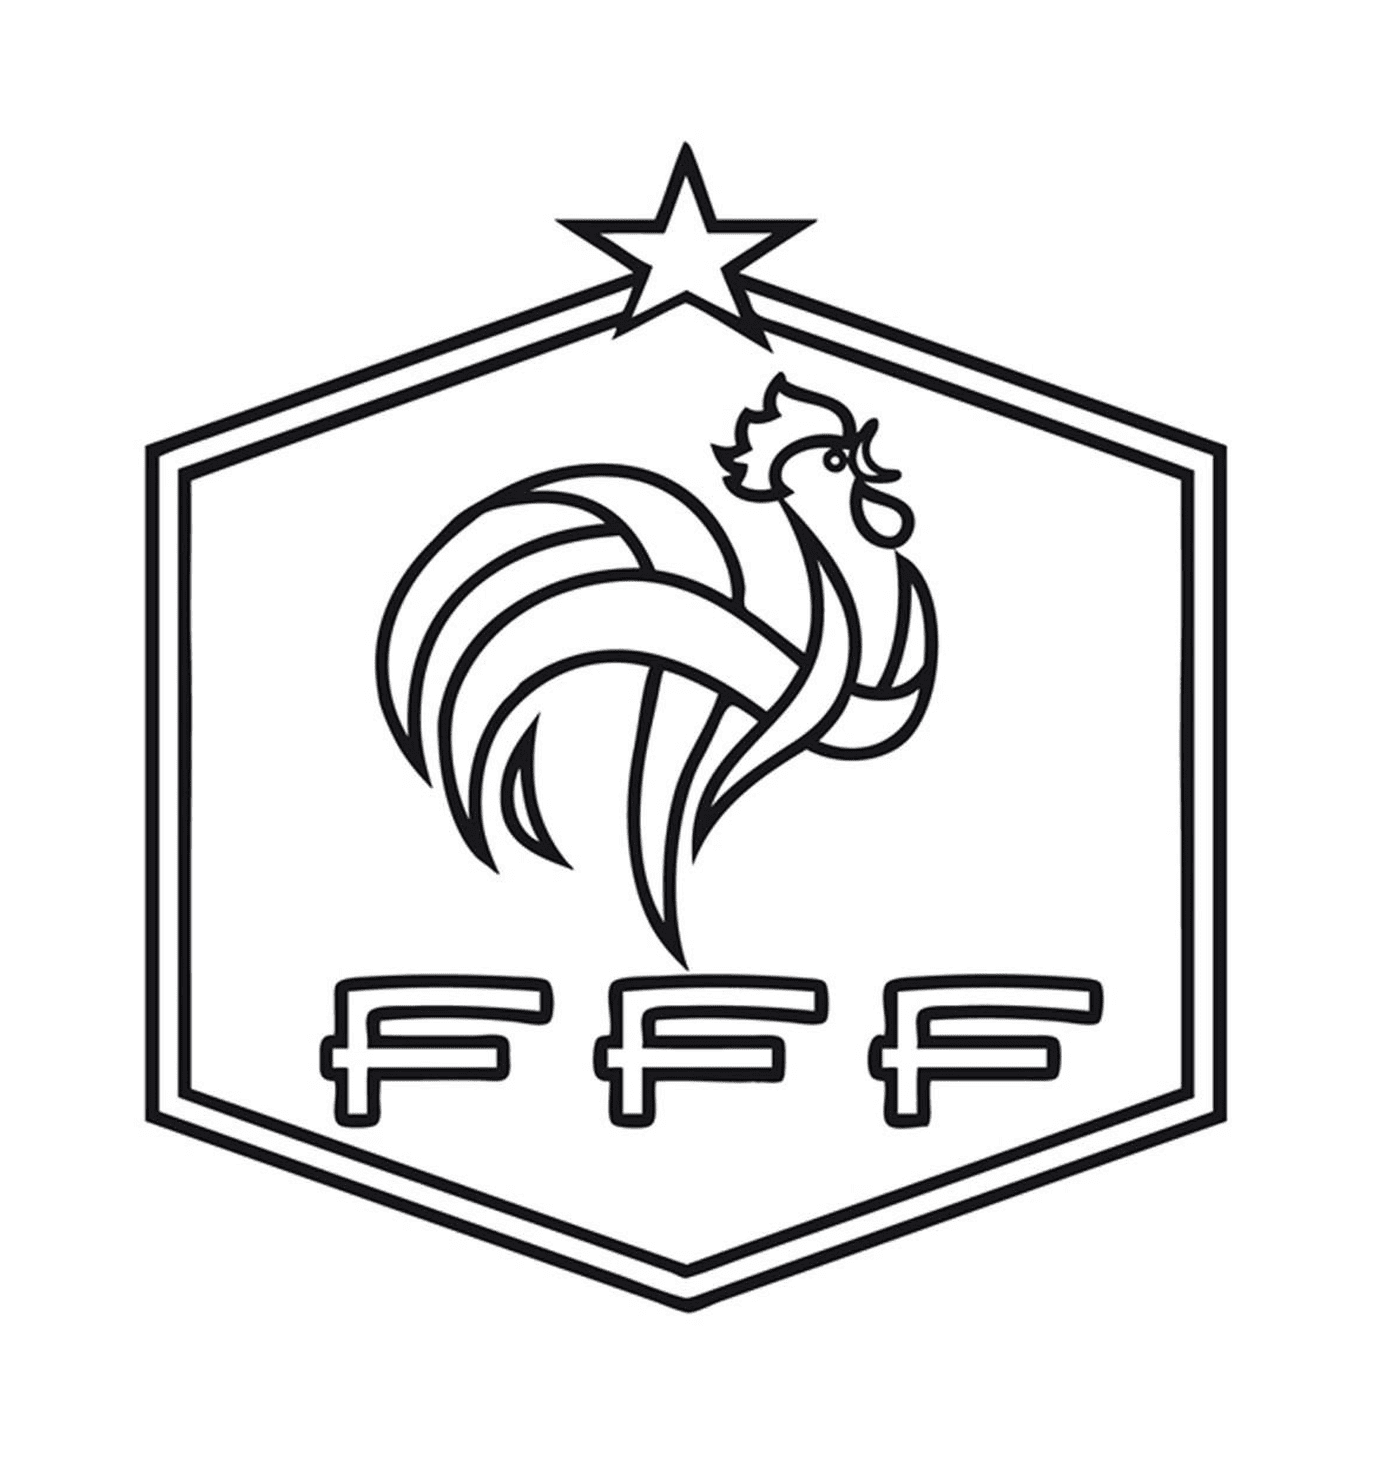  FFF का प्रतीक मुर्गे 